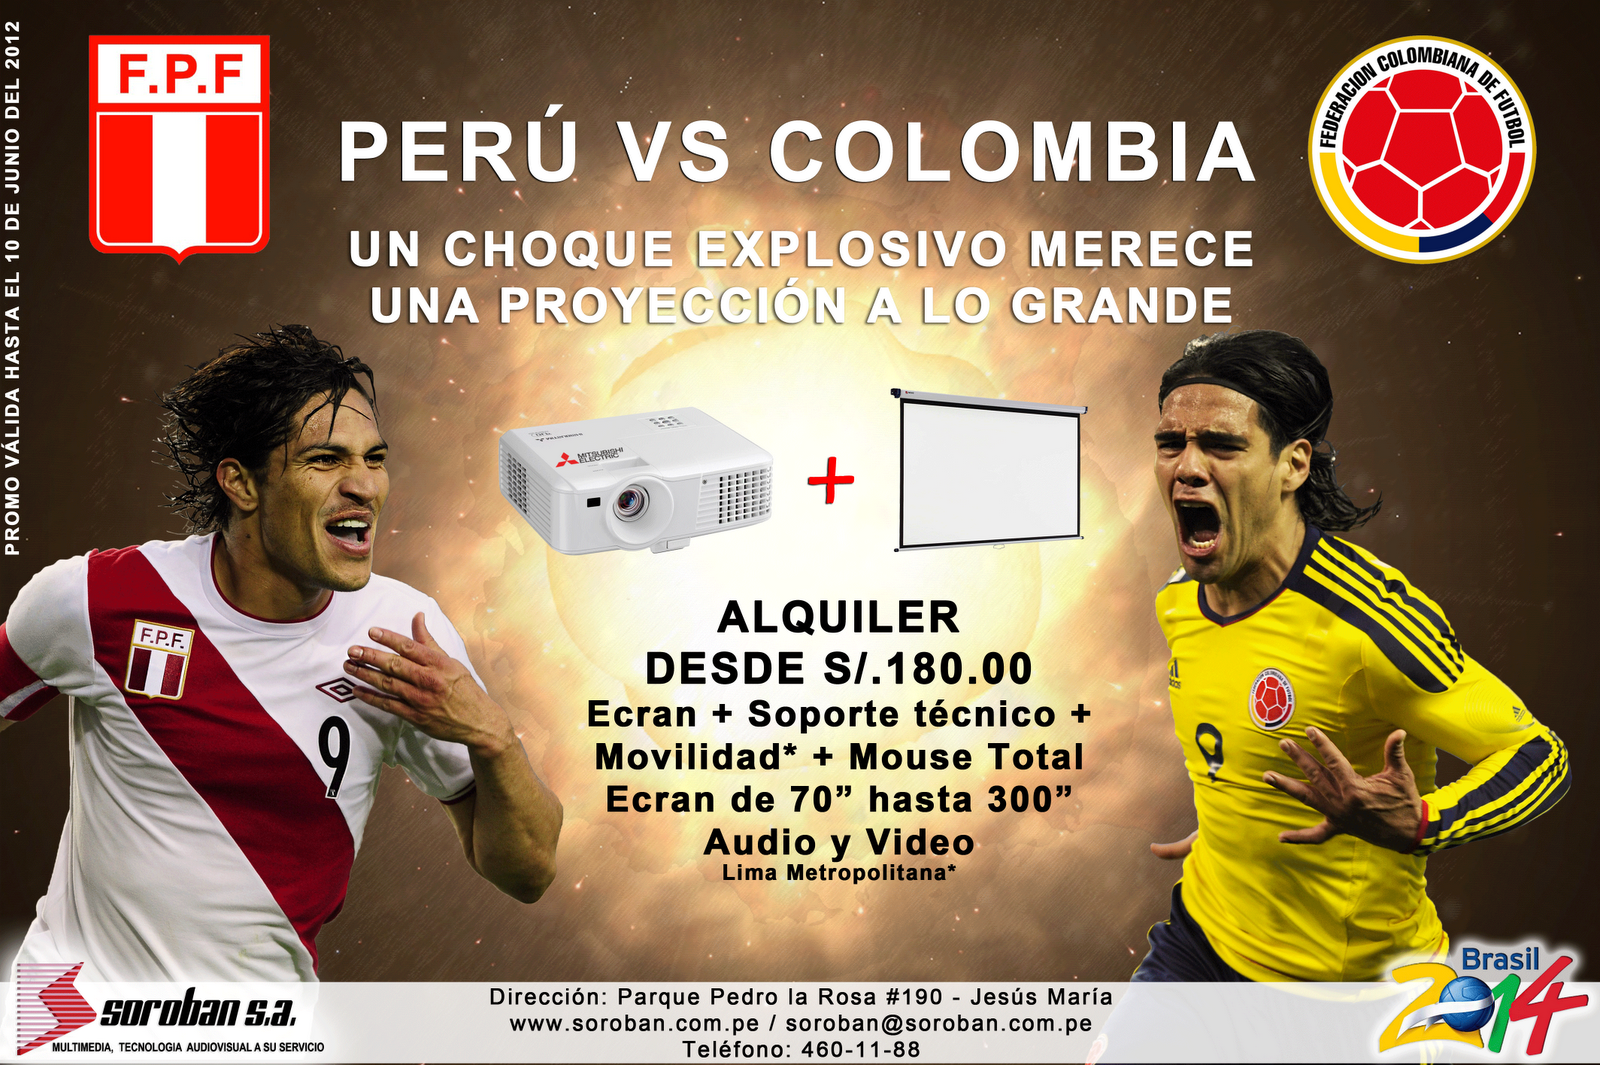 SOROBAN NEWS: PERU VS COLOMBIA - ¡Proyección a lo GRANDE!